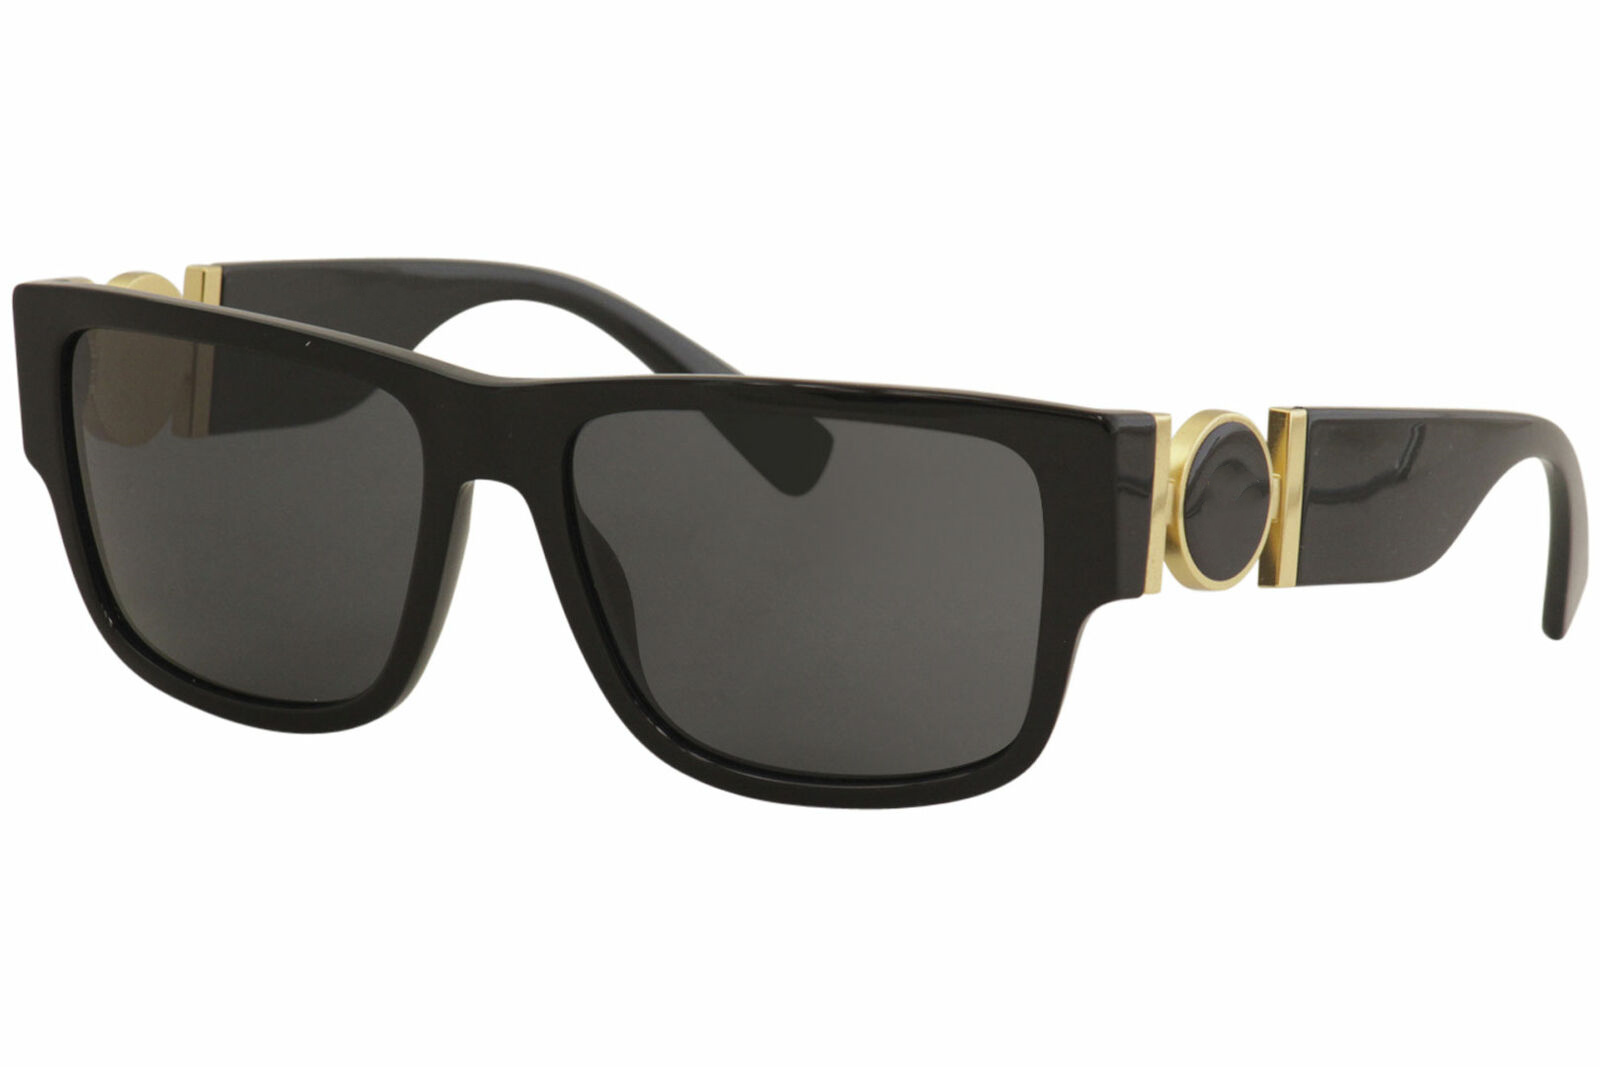 

Man Sunglasses, Black Lenses Acetate Frame, 58mm For Mens Summer style 4369 Anti-Ultraviolet Retro Shield lens Plate Full frame fashion Eyeglasses Random Box